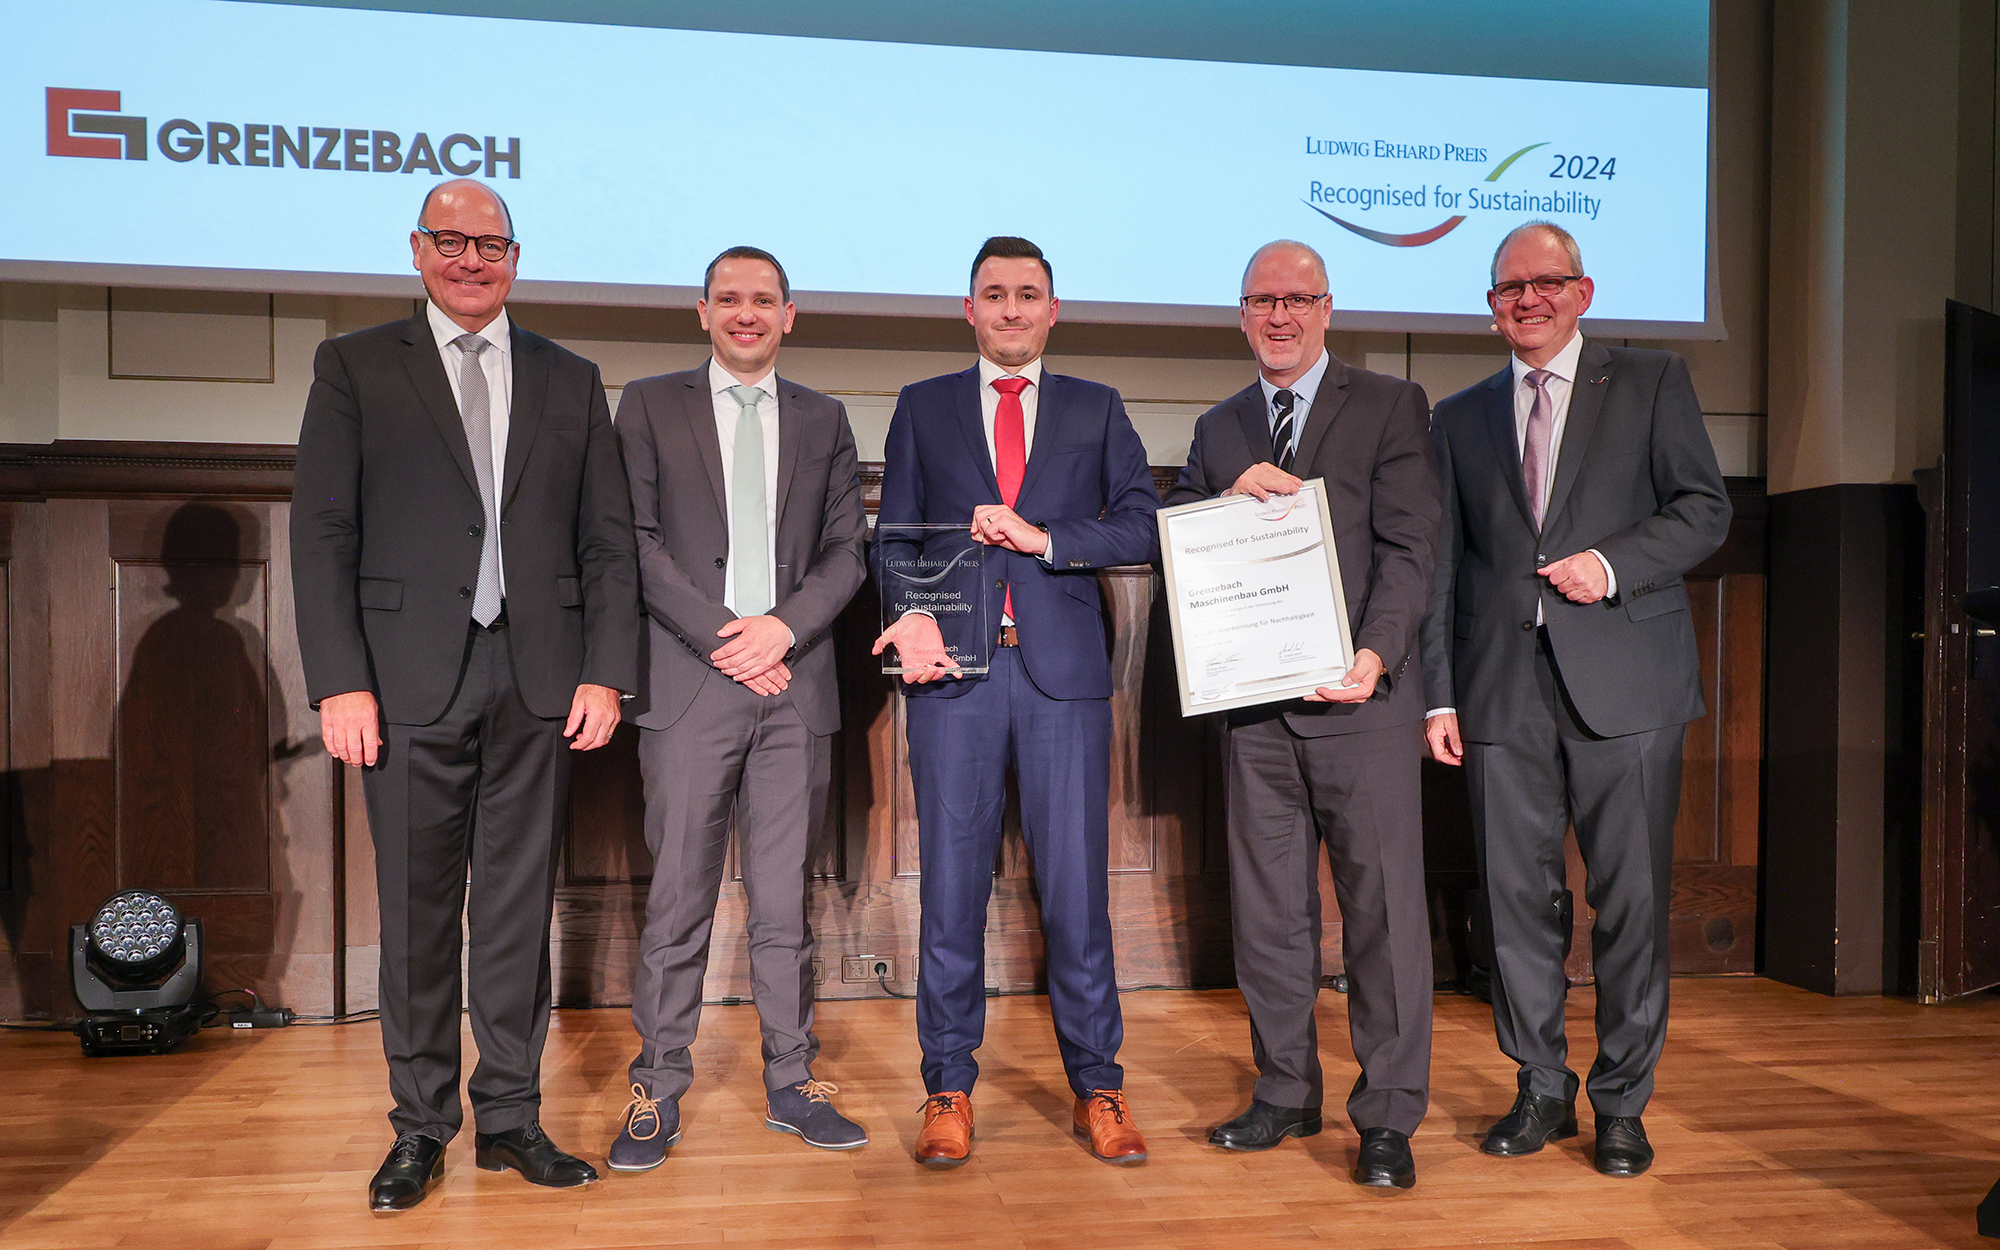 Grenzebach mit ILEP Preis ausgezeichnet